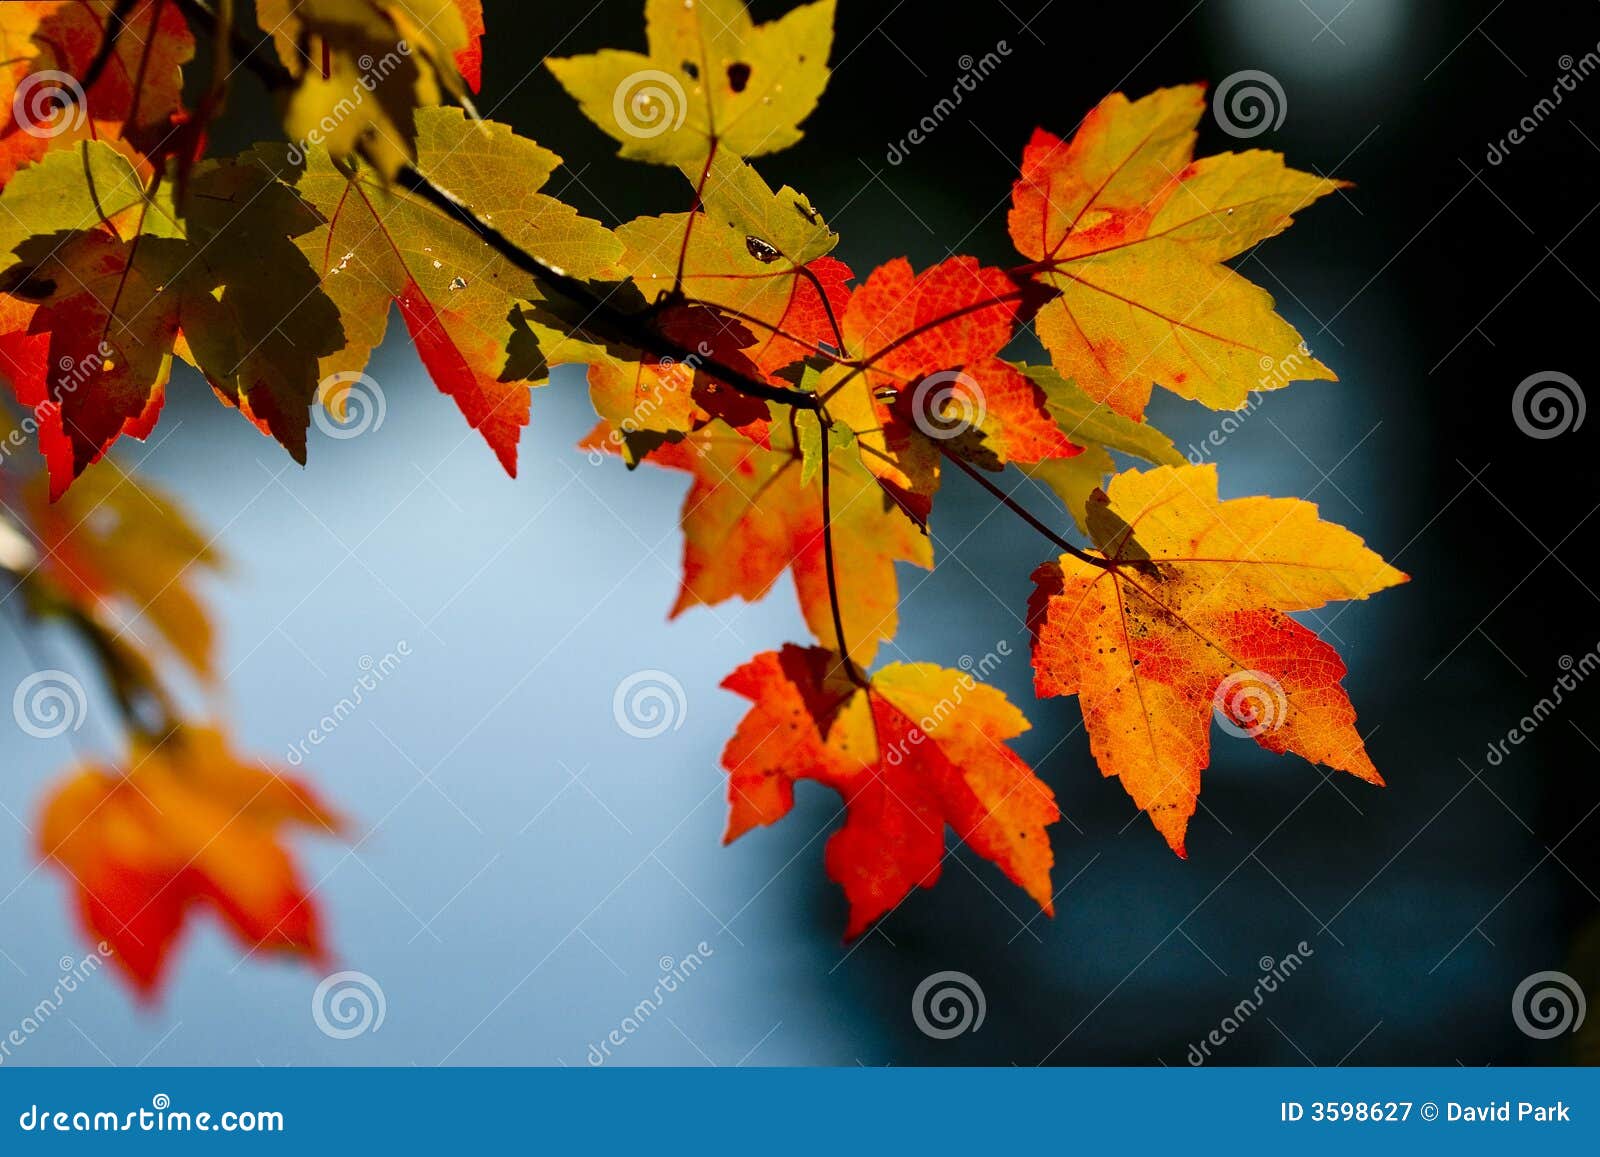 fall season colors